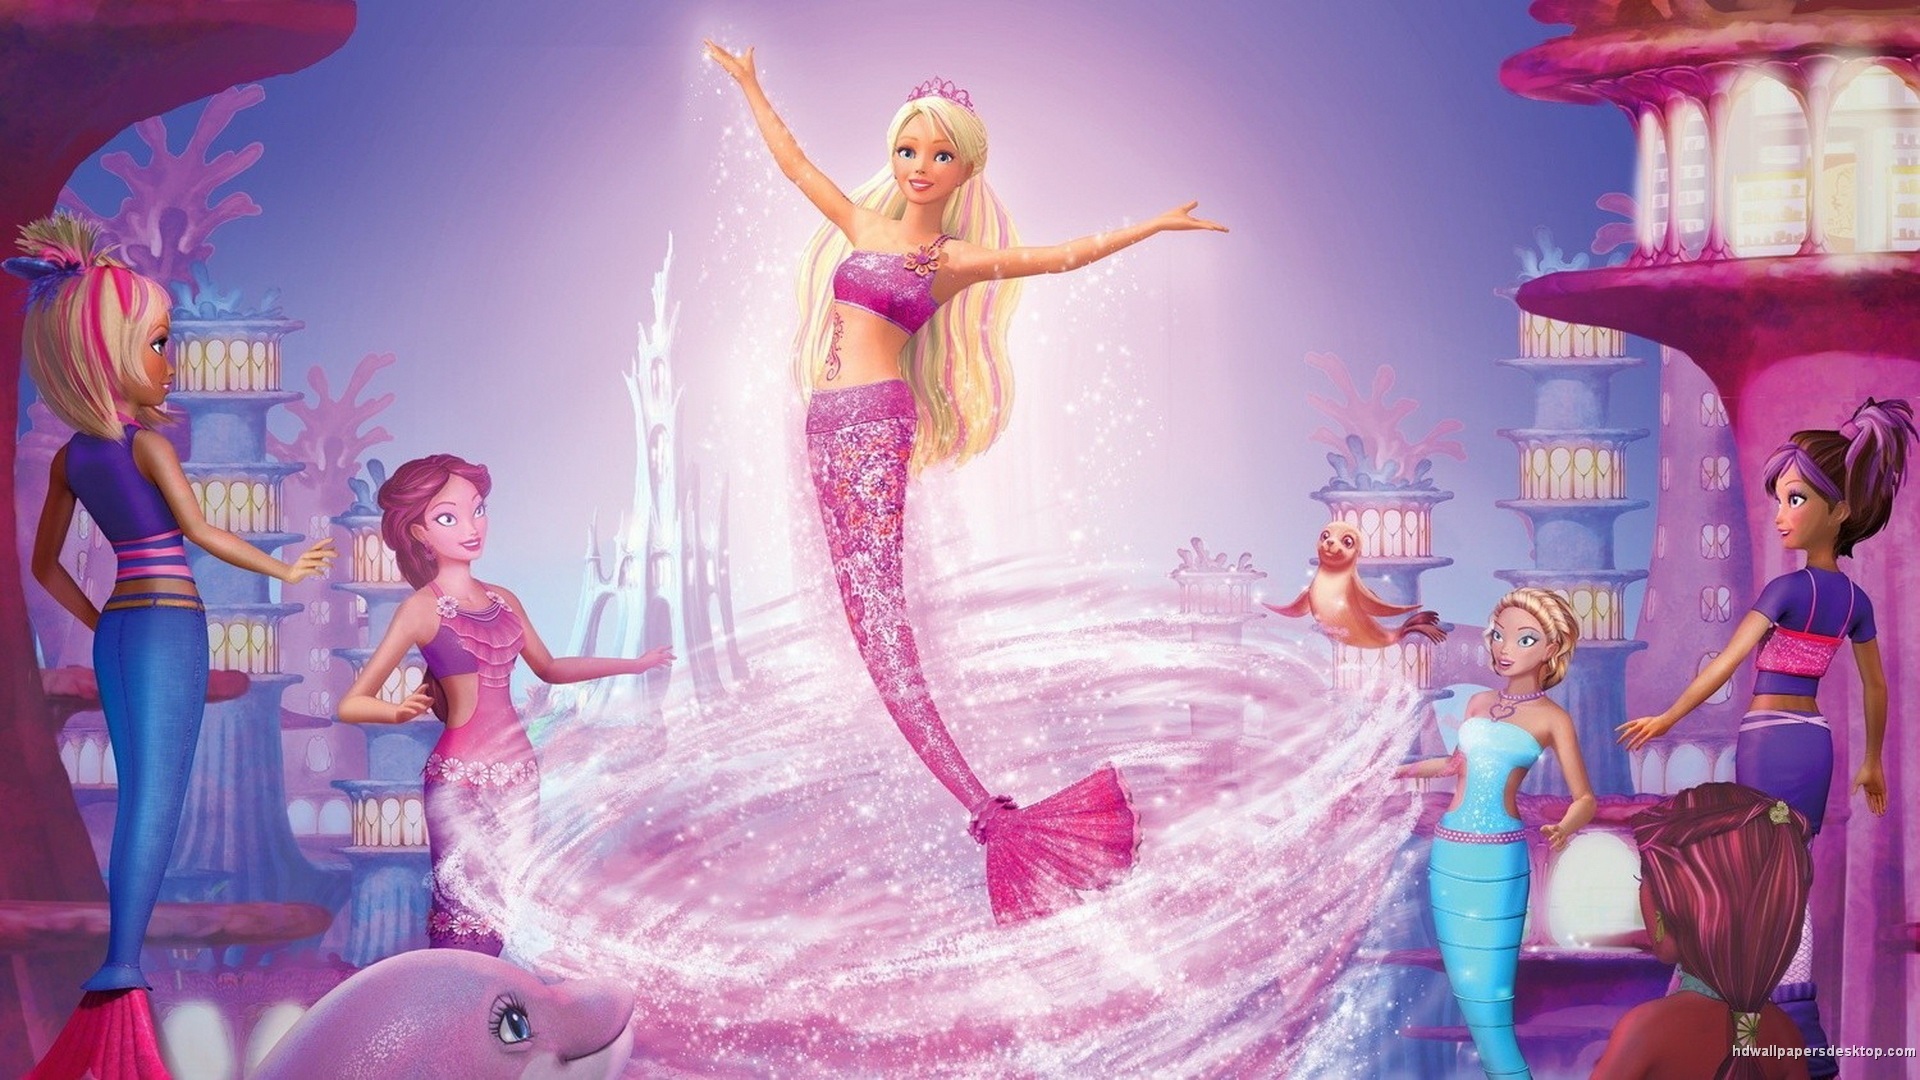 Barbie In A Mermaid Tail - abcjkl Wallpaper (38071015) - Fanpop